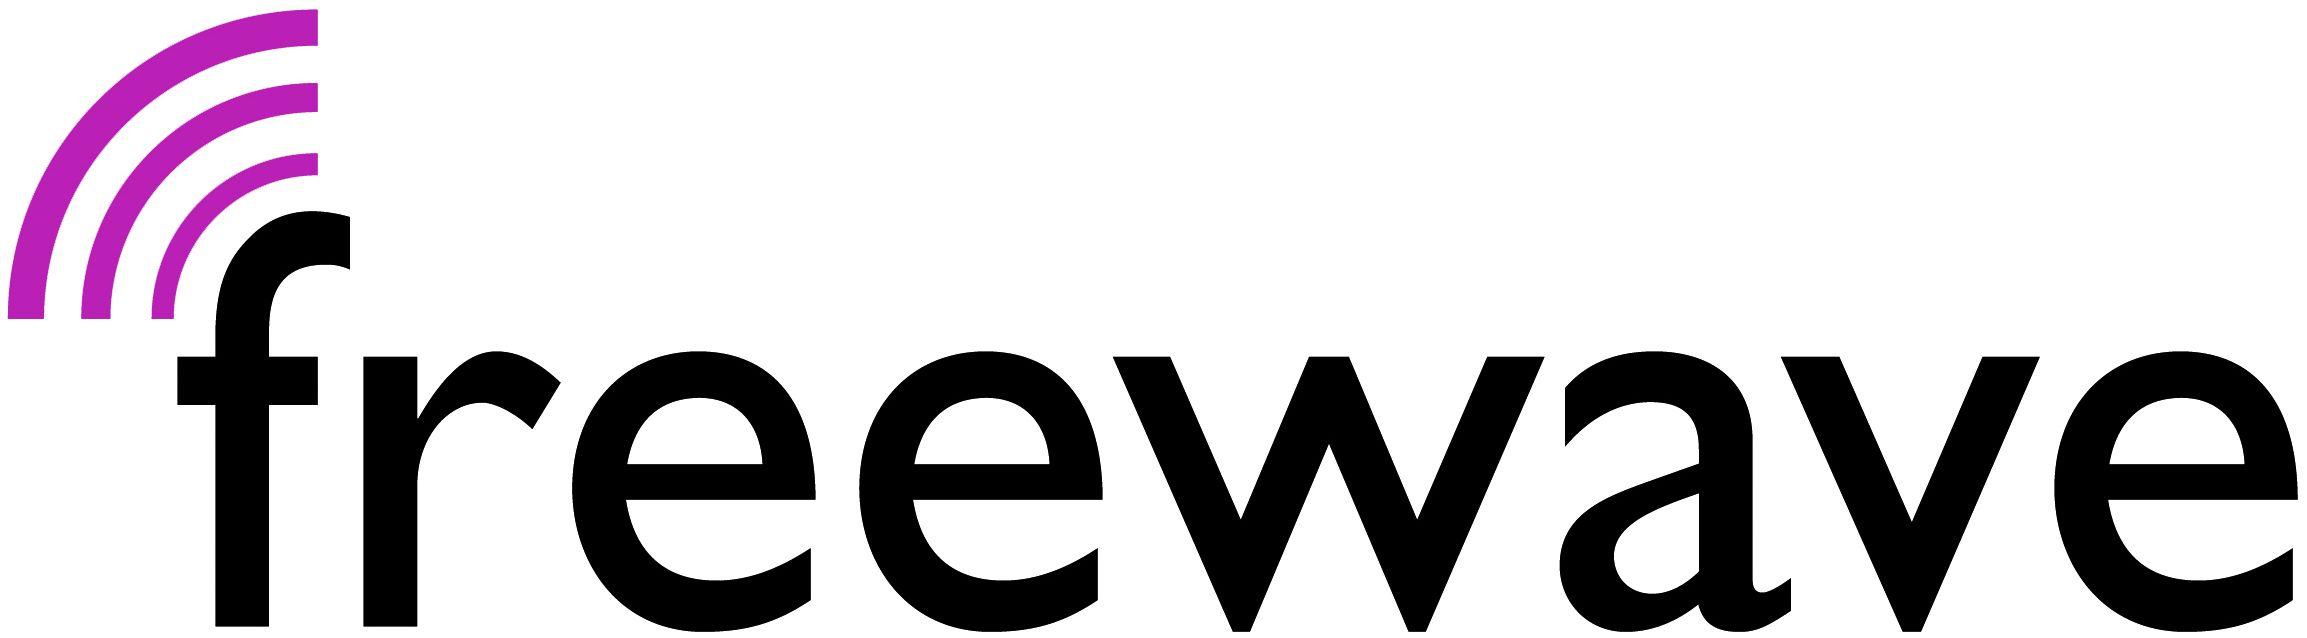 FreeWave Logo - ostermarkt.co.at